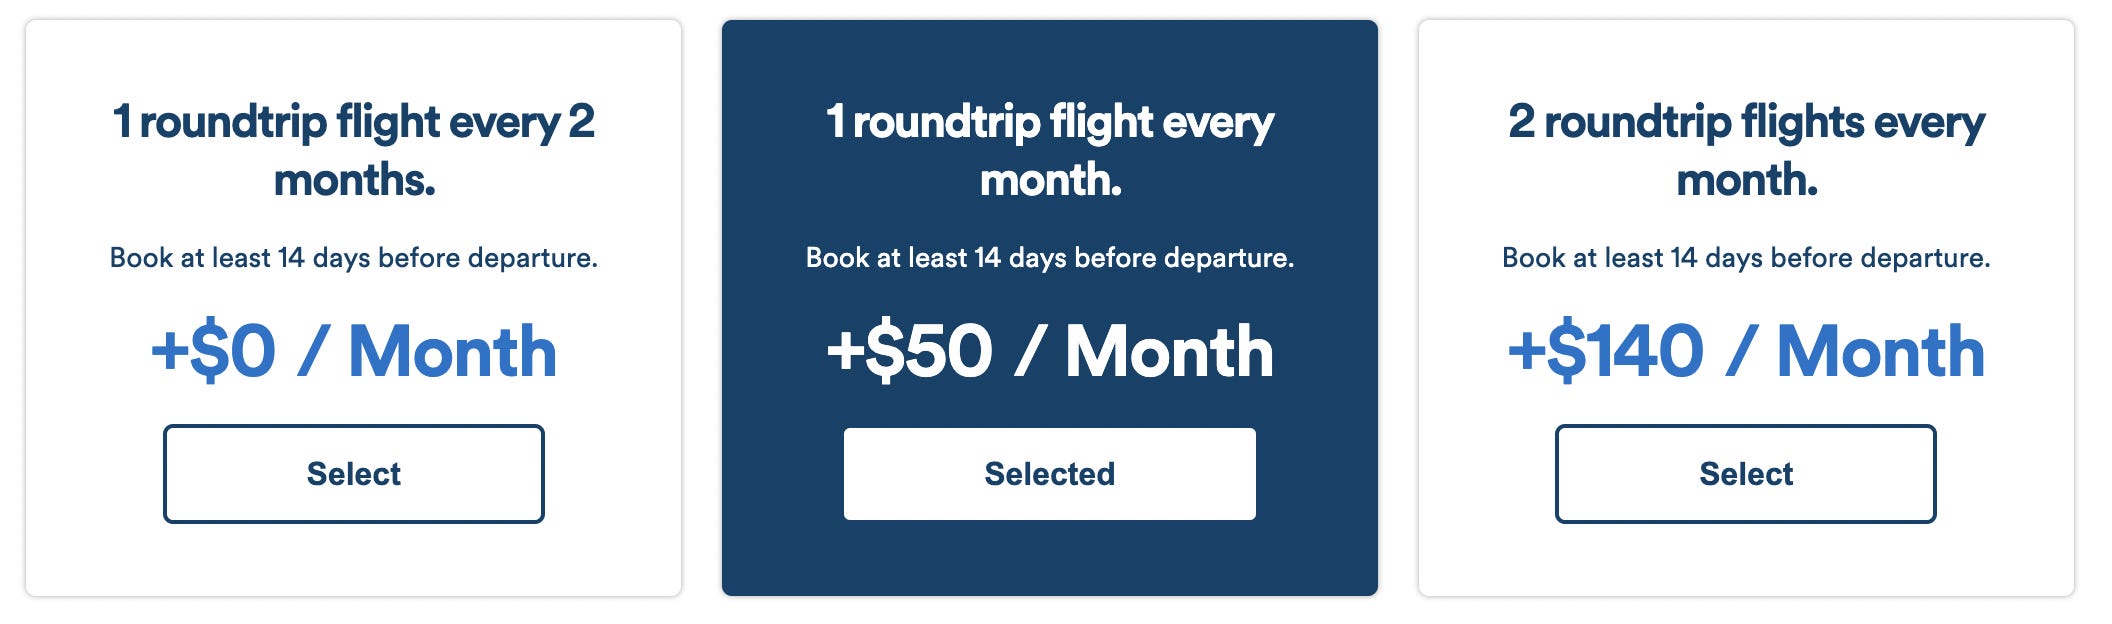 Flight Pass-Abonnementoptionen beginnen bei 49 $ pro Monat.  Die zweite Option kostet 99 $ pro Monat, während die dritte 189 $ pro Monat kostet.